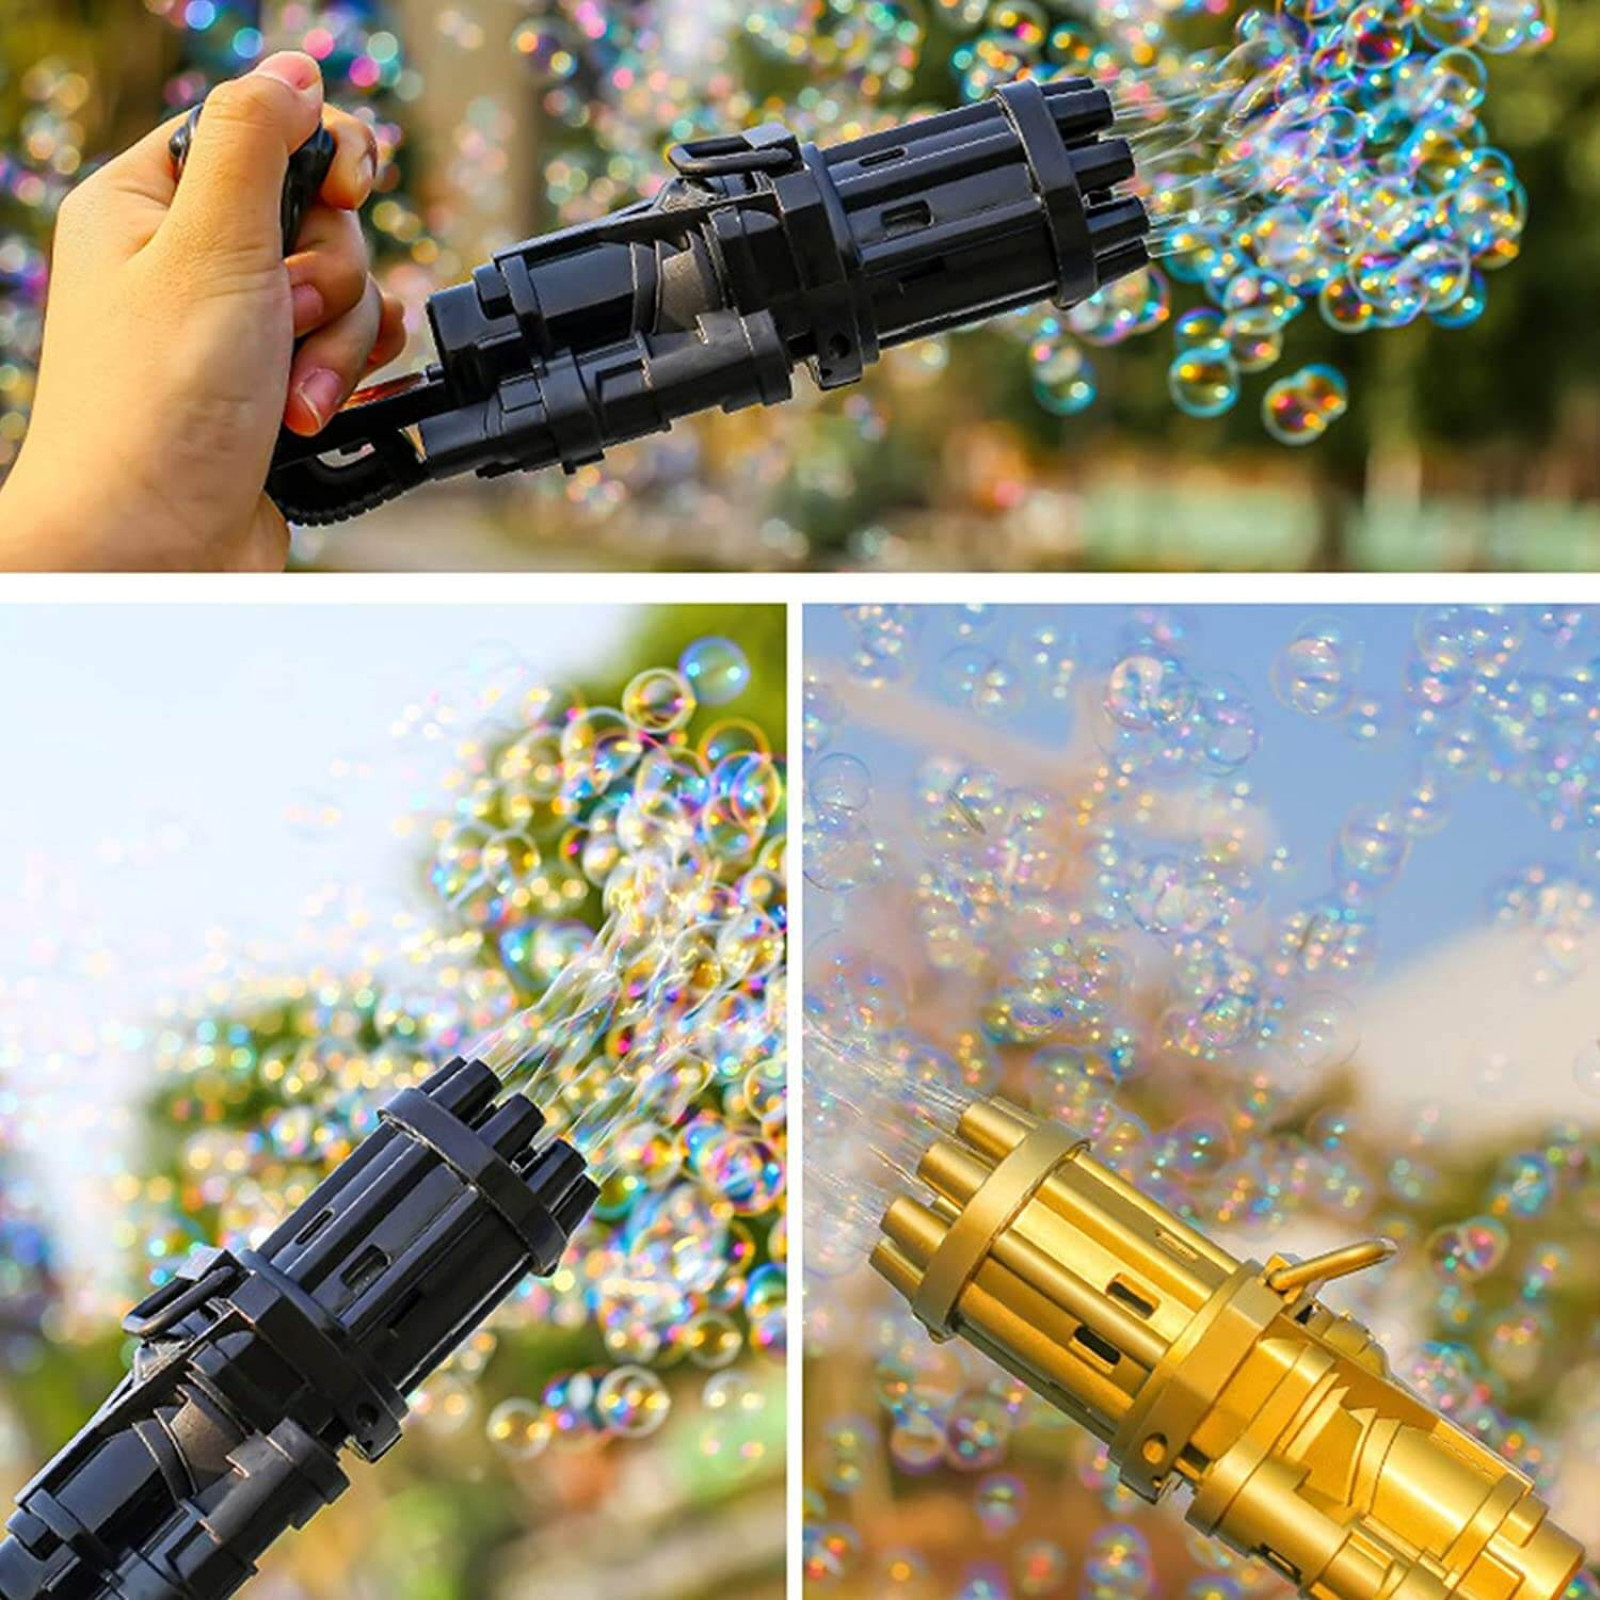 Автоматическая игрушка-пулемет генератор для создания мыльных пузырей Bubble Gun Blaster стандарт 194126